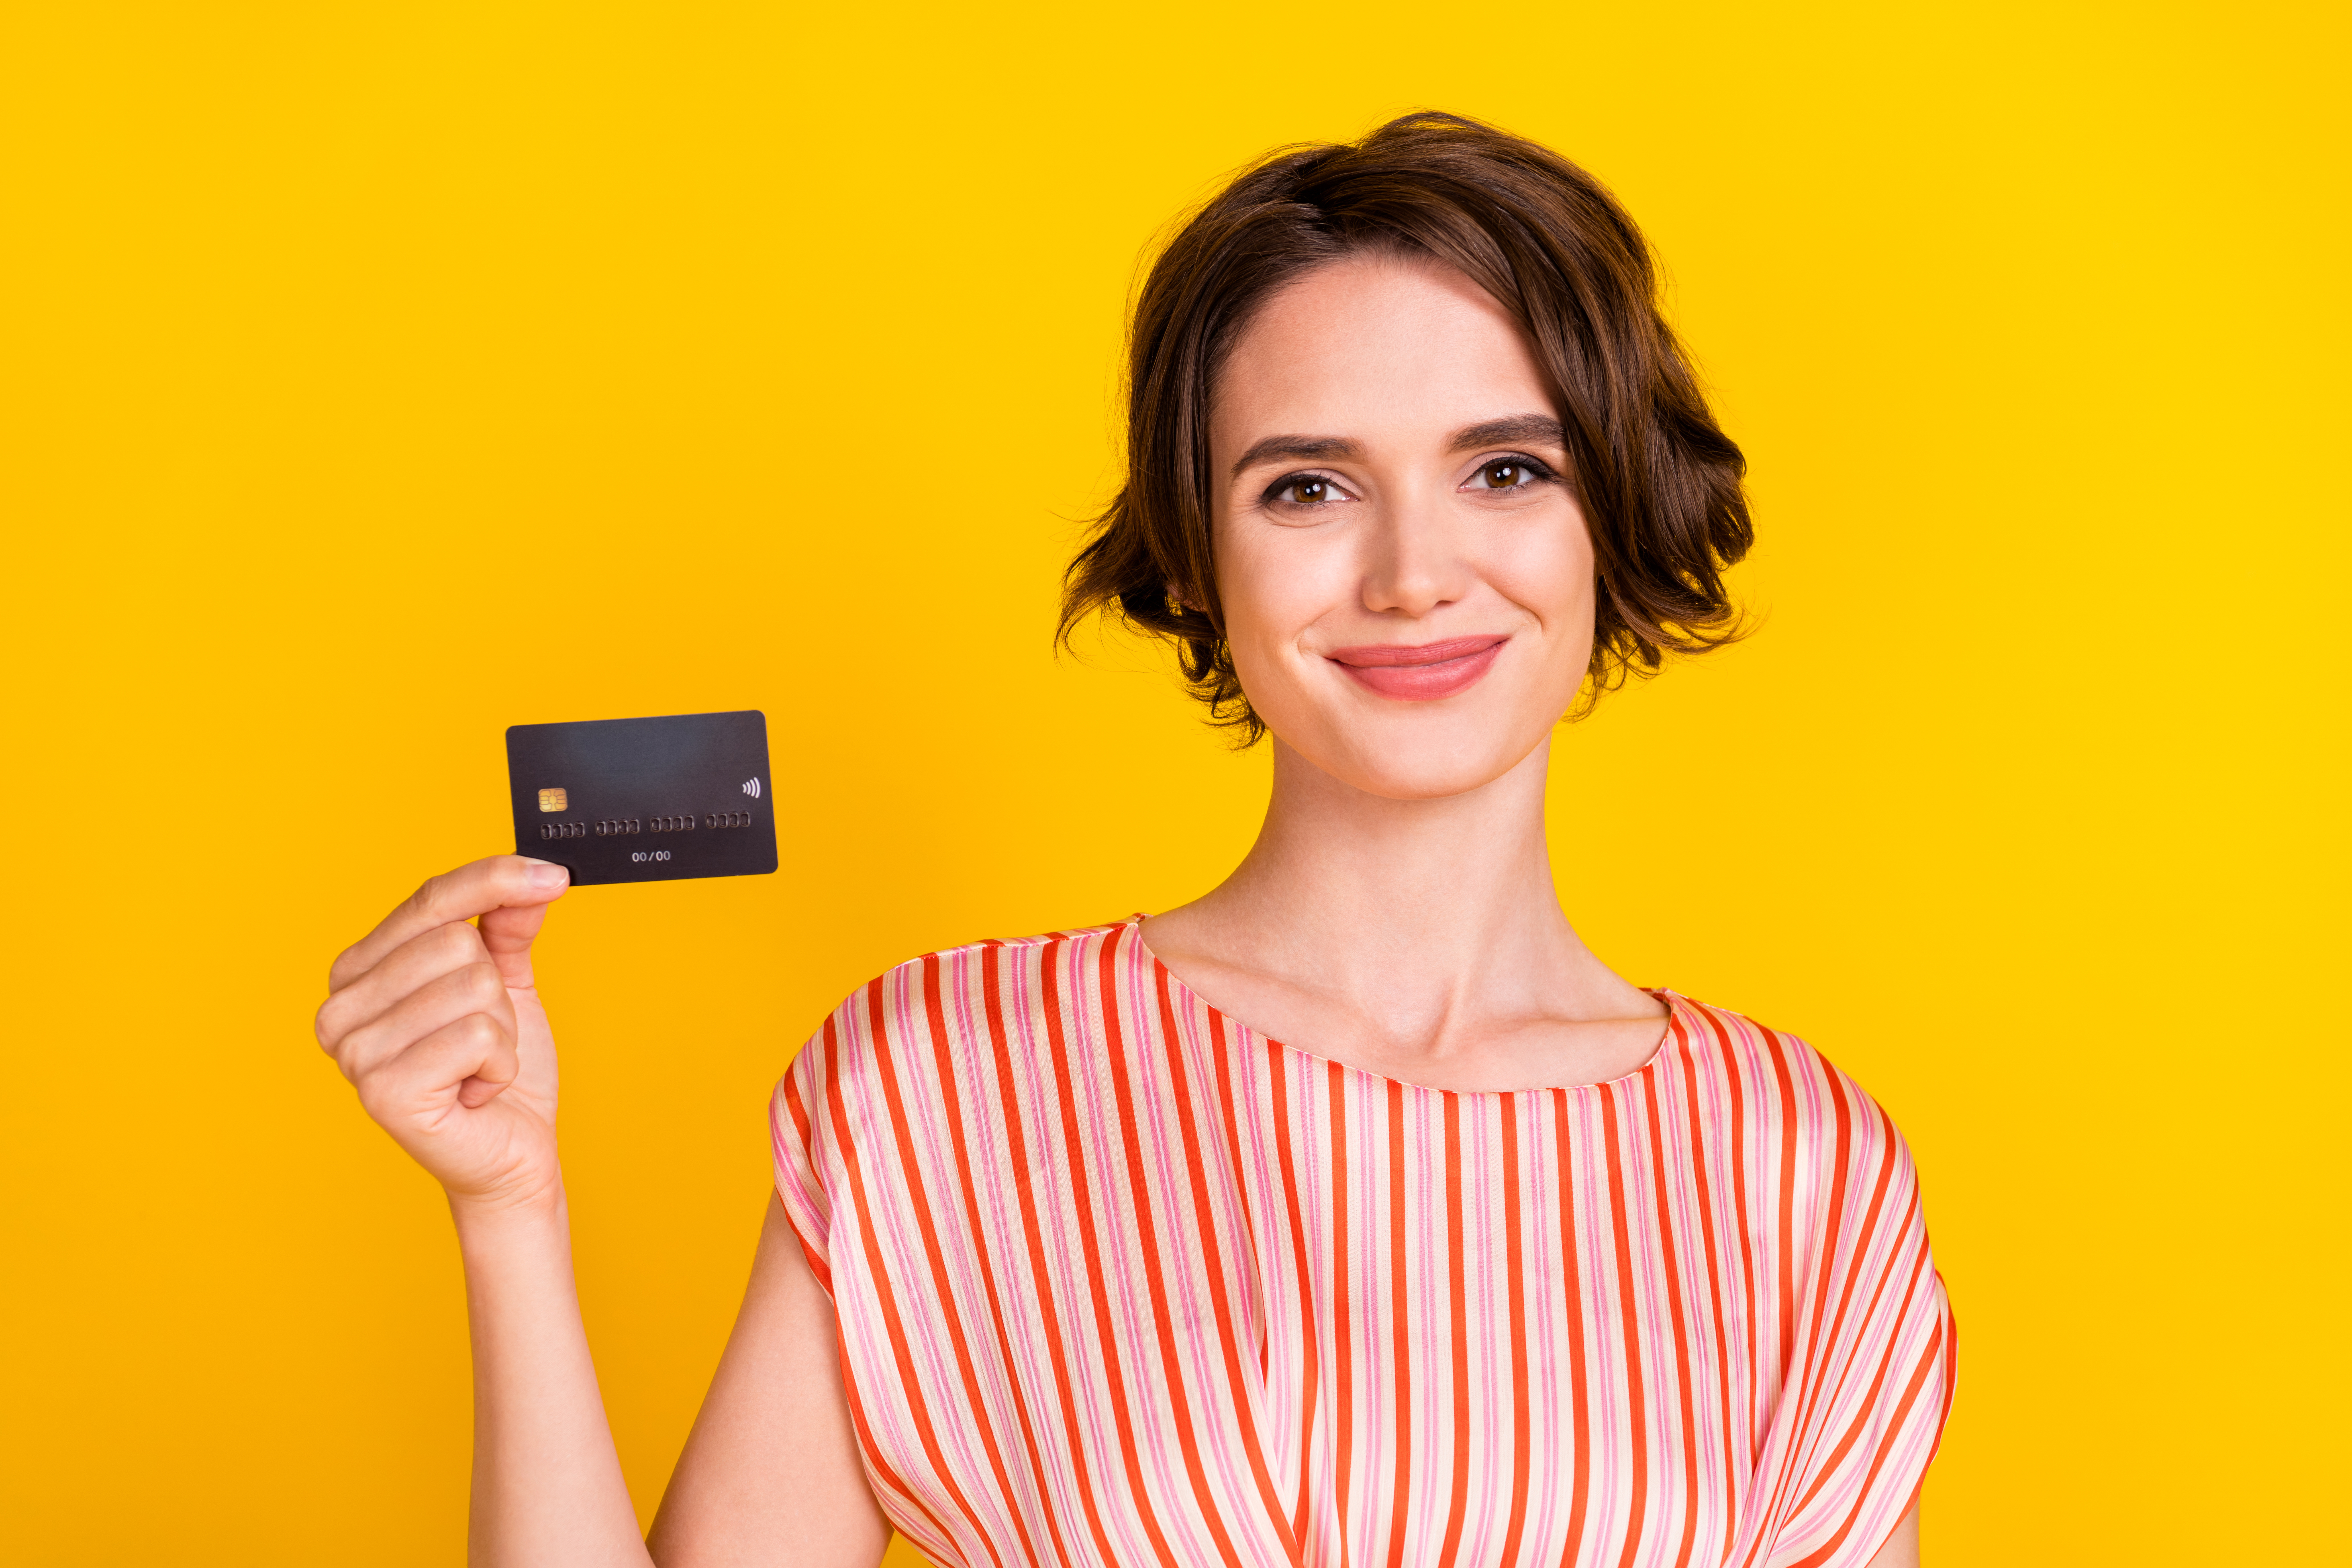 Afinal, como conseguir seu primeiro cartão de crédito? Fonte: Adobe Stock.